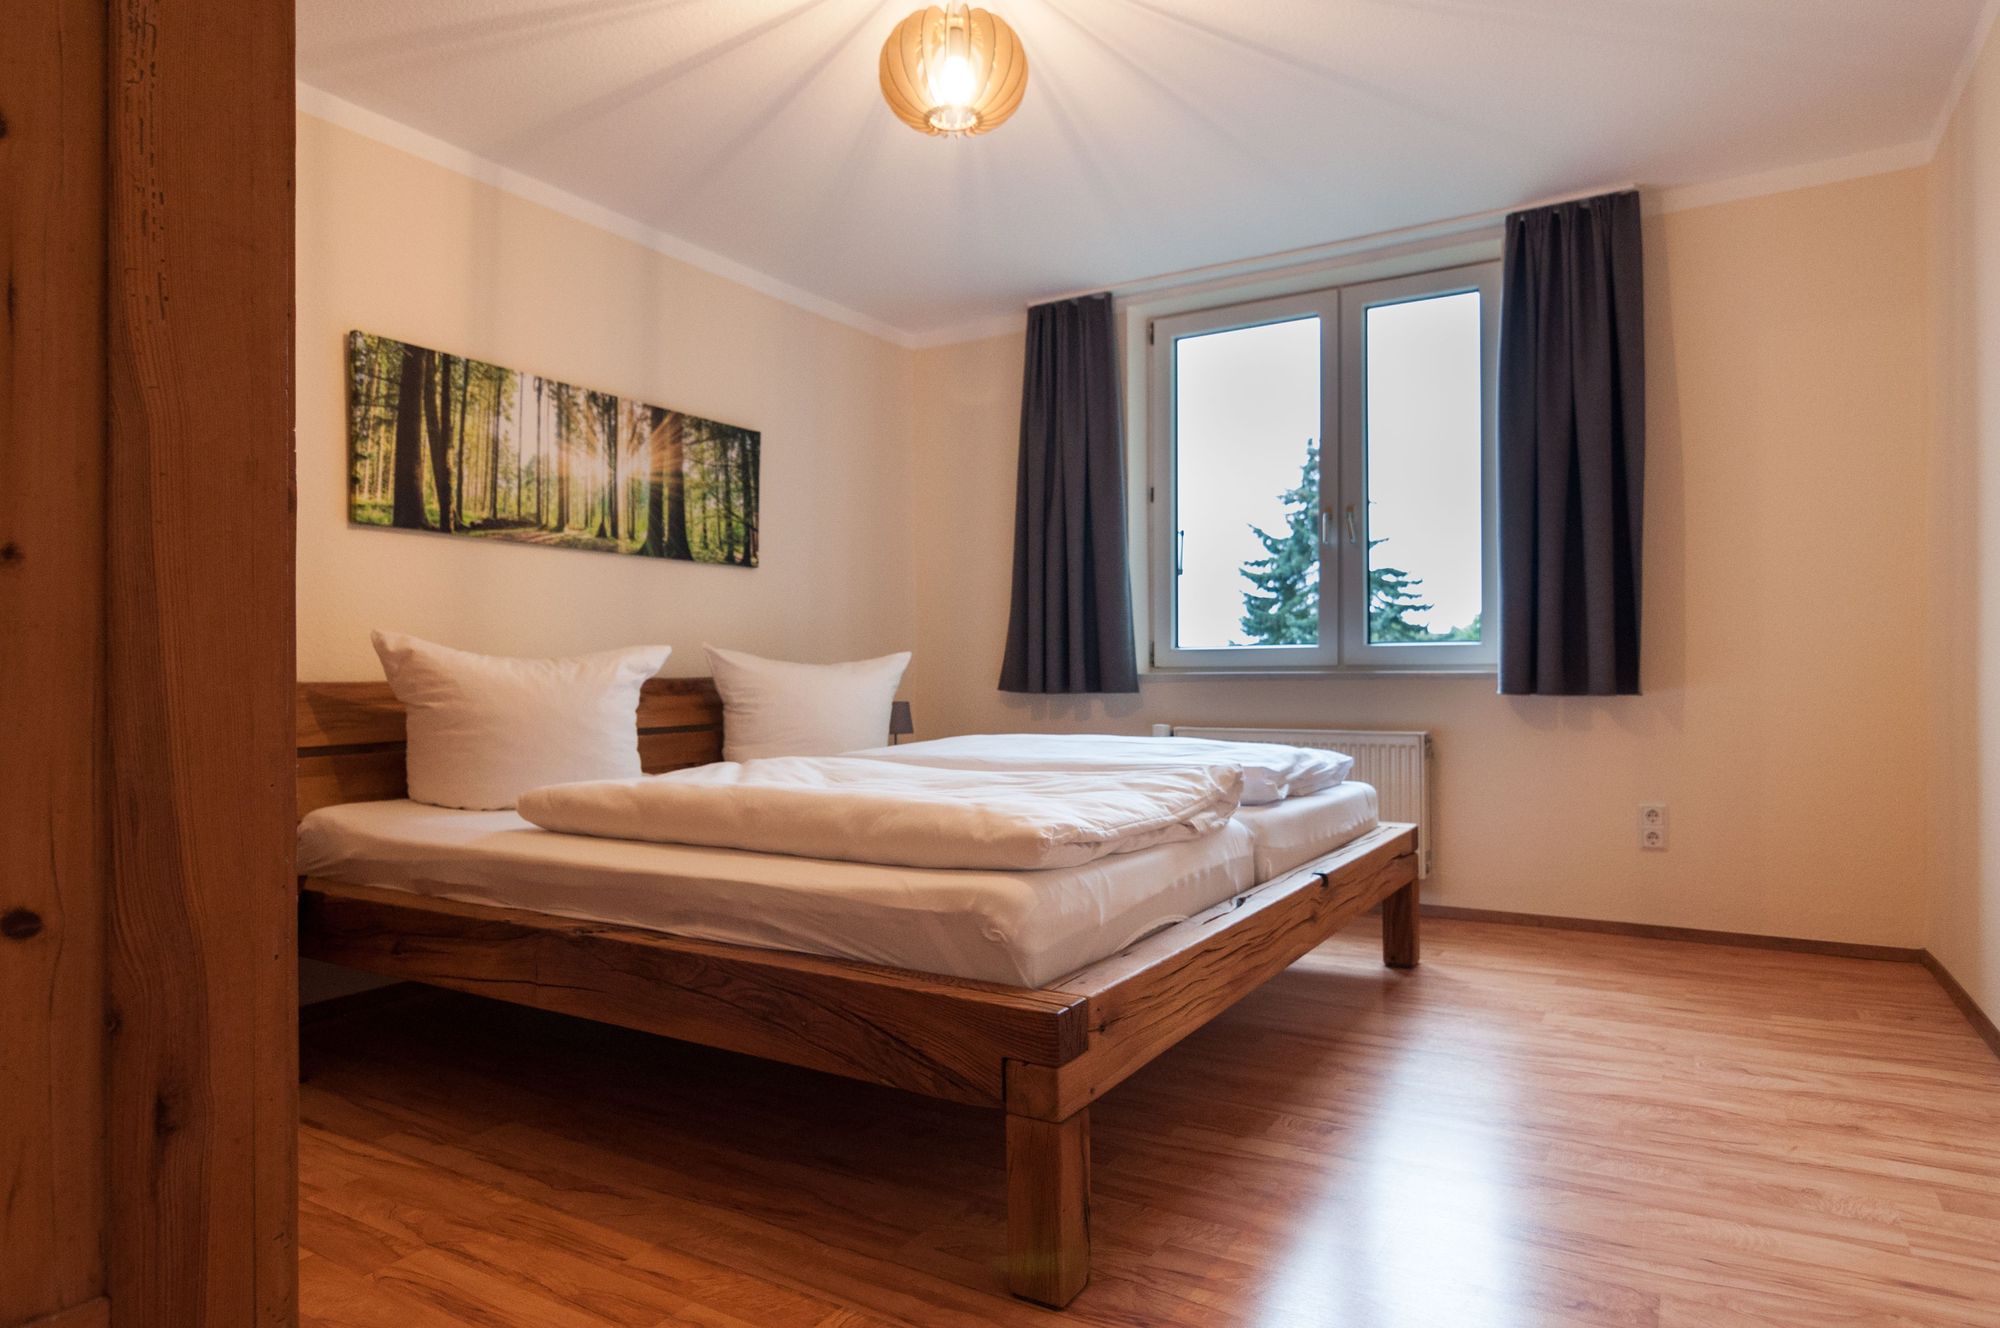 Alle Zimmer sind hell und wohnlich mit viel Holz ausgestattet - Wohlfühlatmosphäre!<br>(Bild: Natur Pur Ferienhausvermietung) 